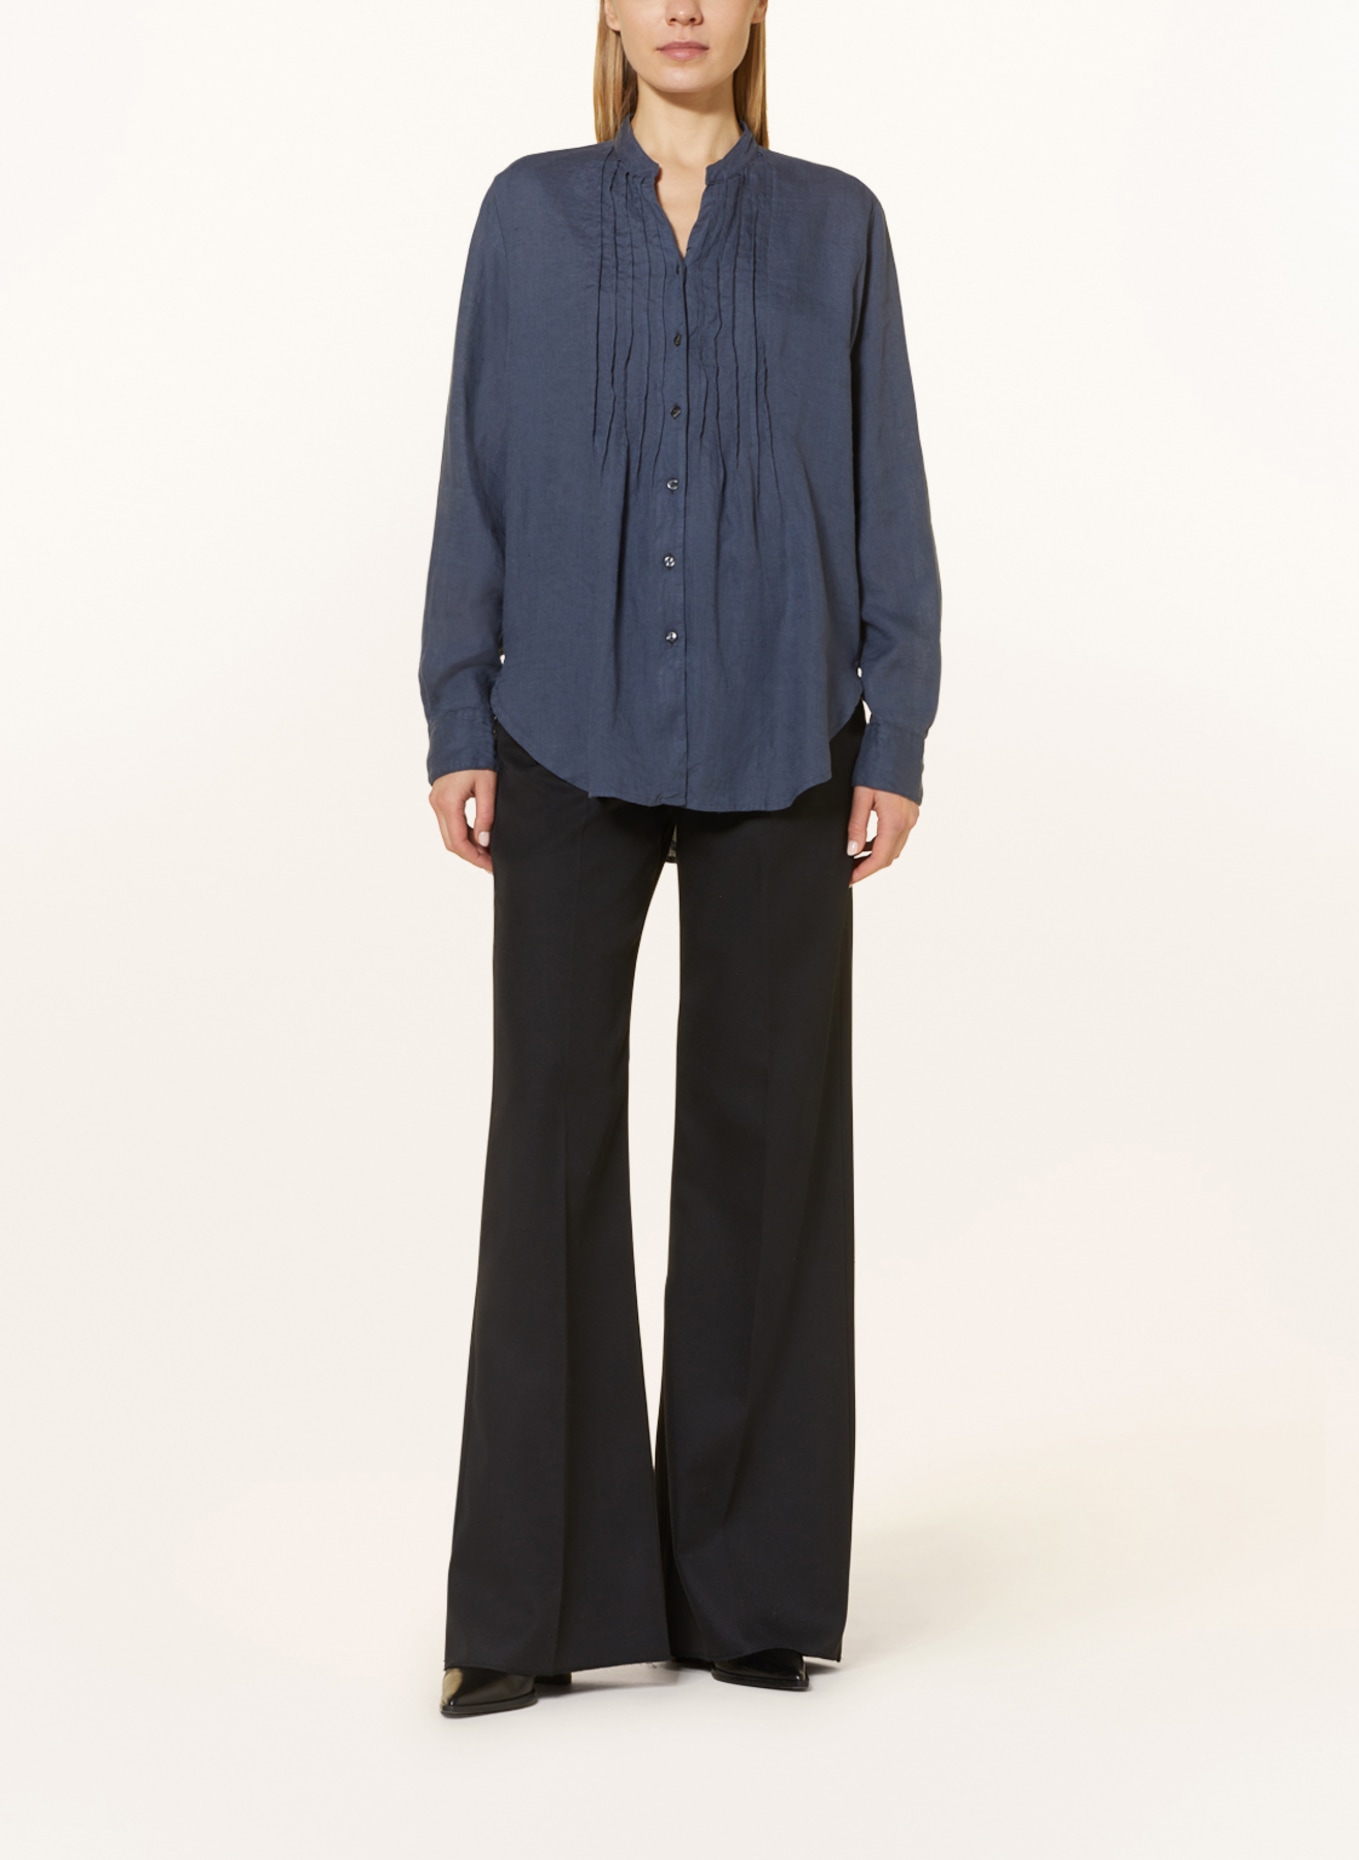 rossana diva Linen blouse, Color: DARK GRAY (Image 2)